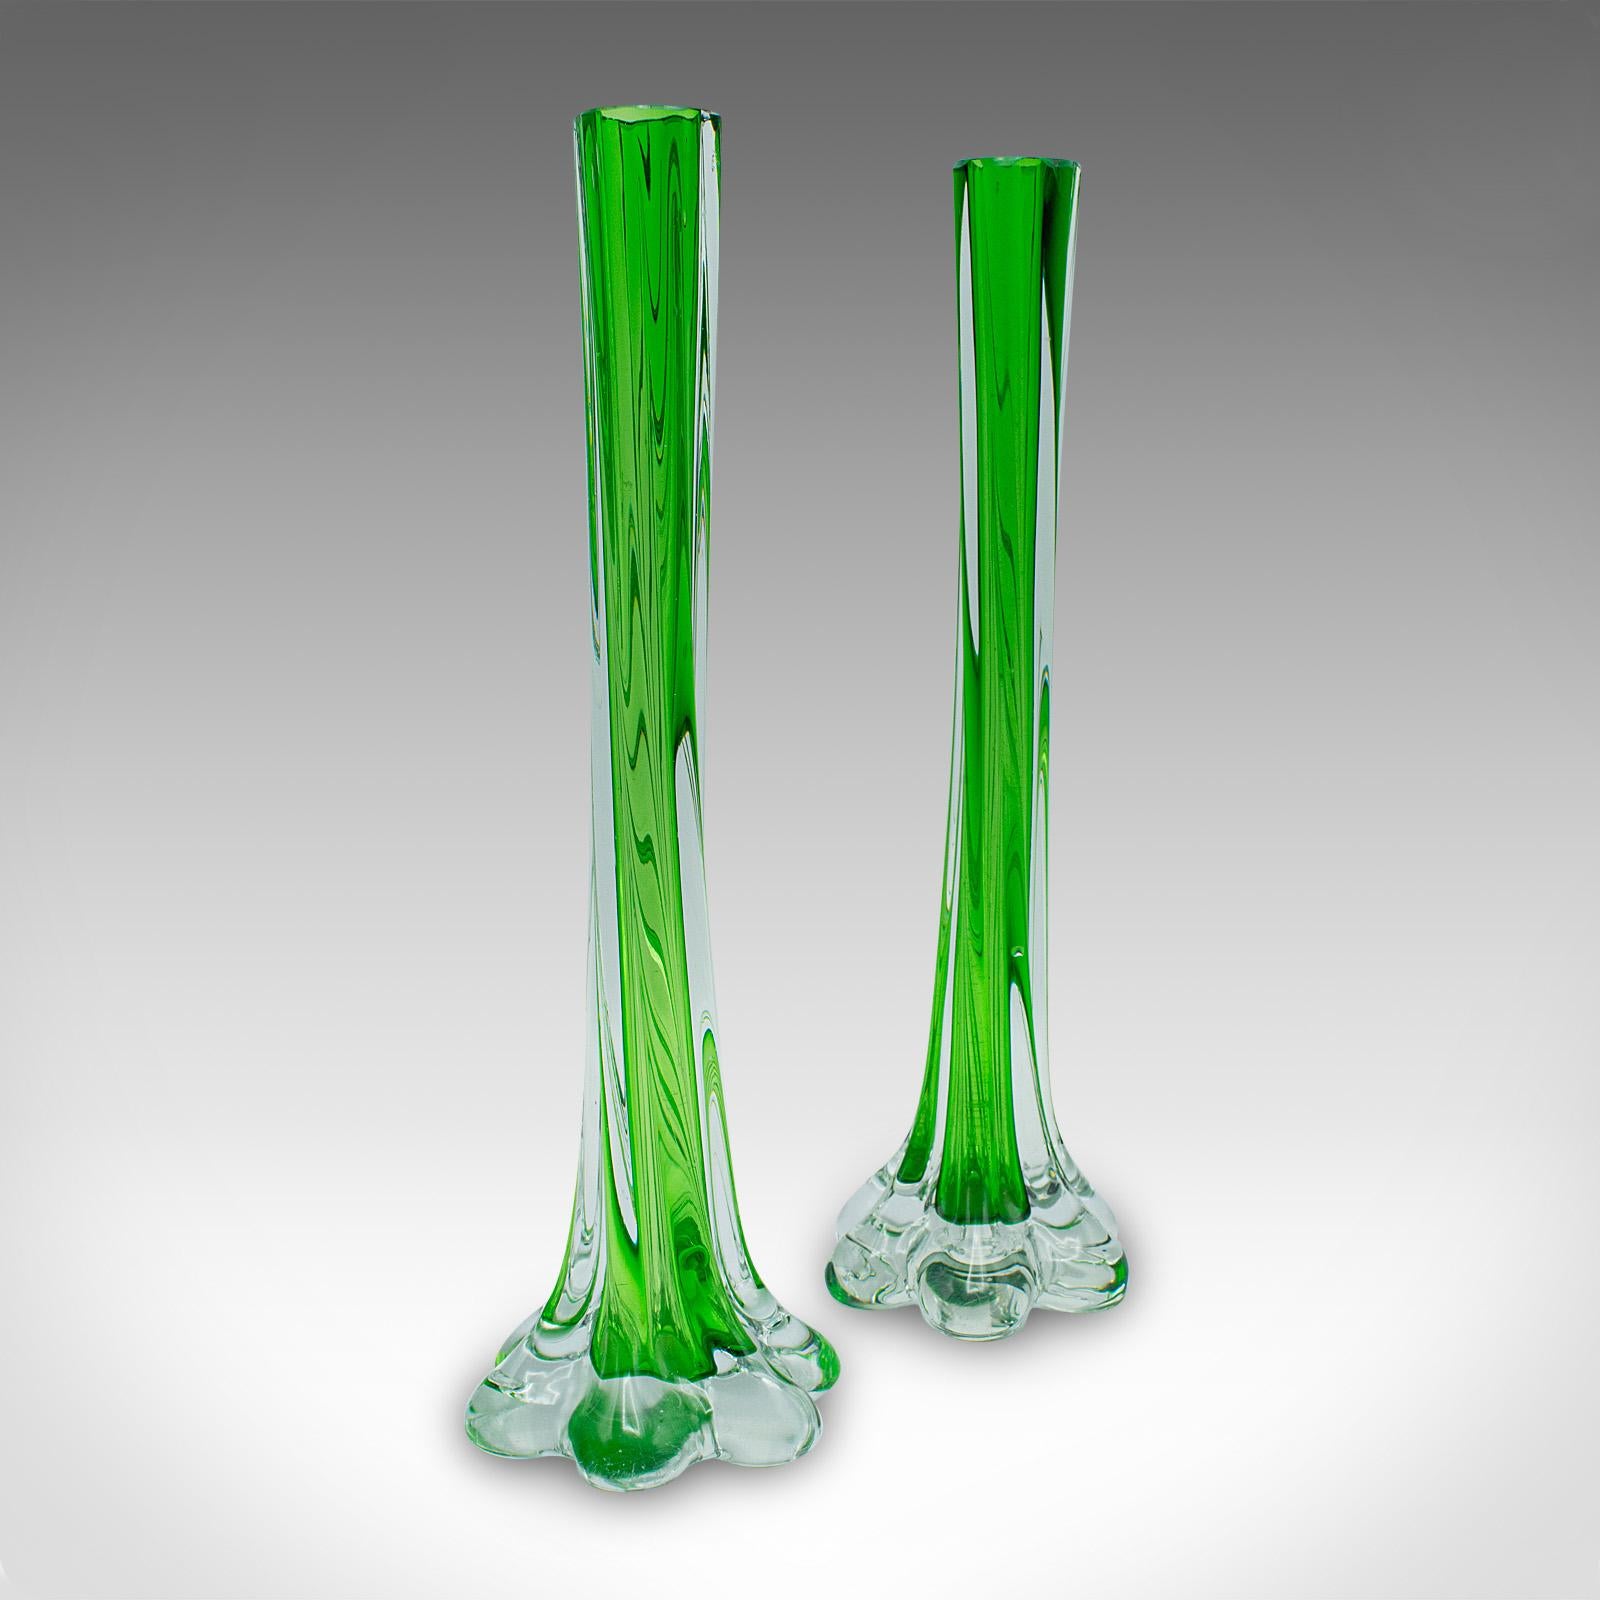 
Dies ist ein Paar von Vintage Twist Stamm Vasen. Französische Blumenmanschette aus Kunstglas, Mitte des 20. Jahrhunderts, um 1950.

Charmante französische Glaswaren mit verspielten, attraktiven Formen
Mit wünschenswerter Alterspatina und in gutem